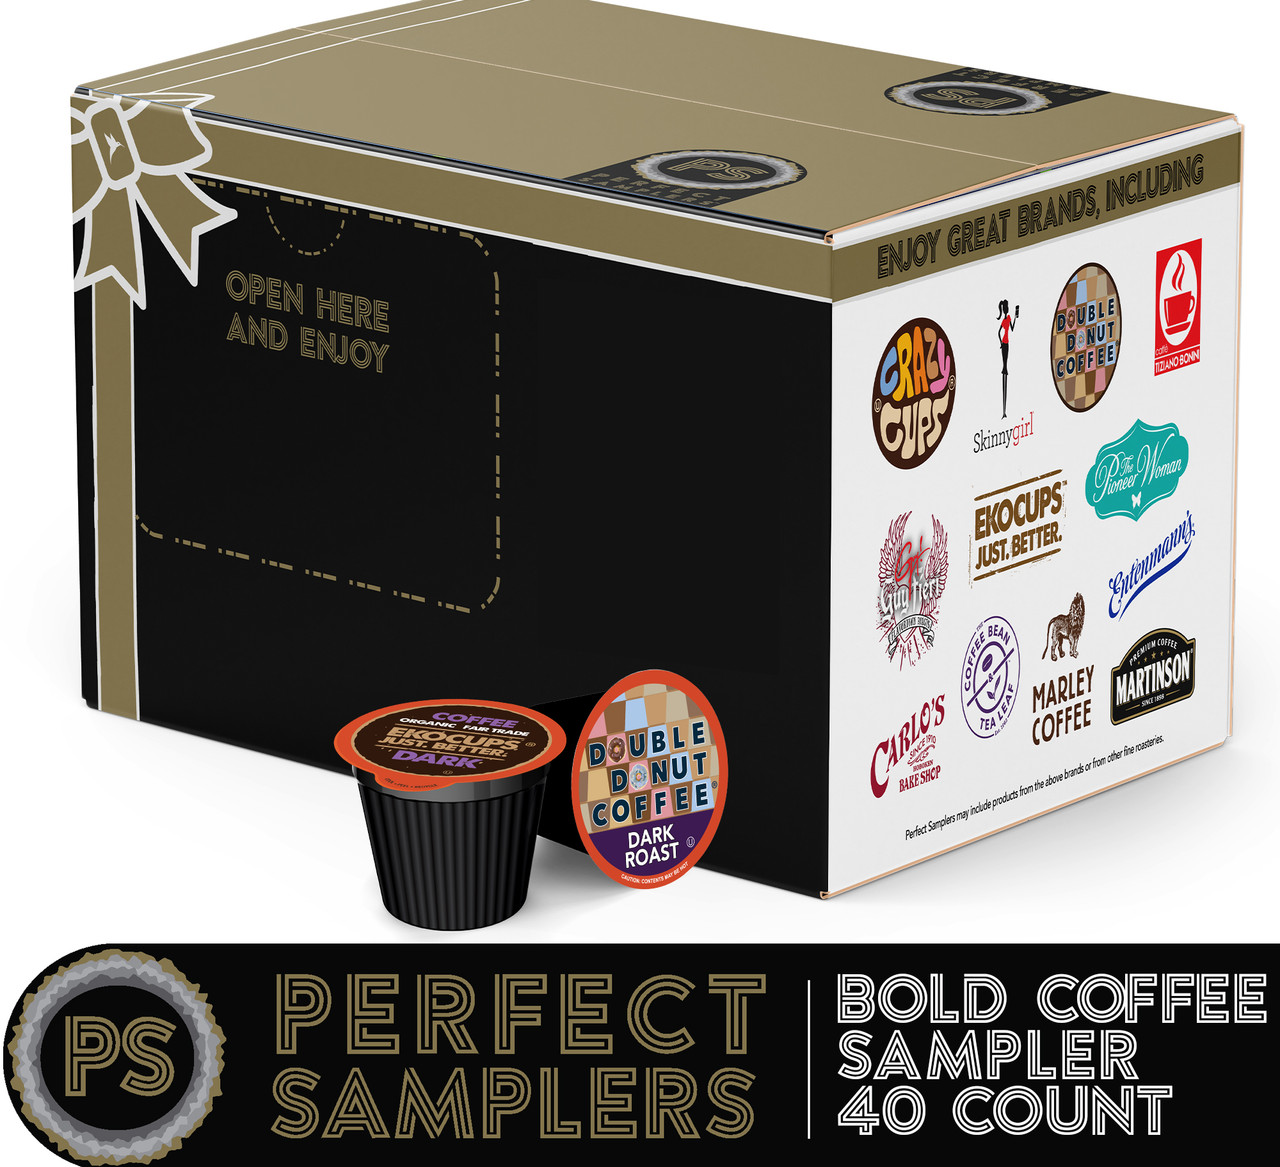 K-cup coffee samples